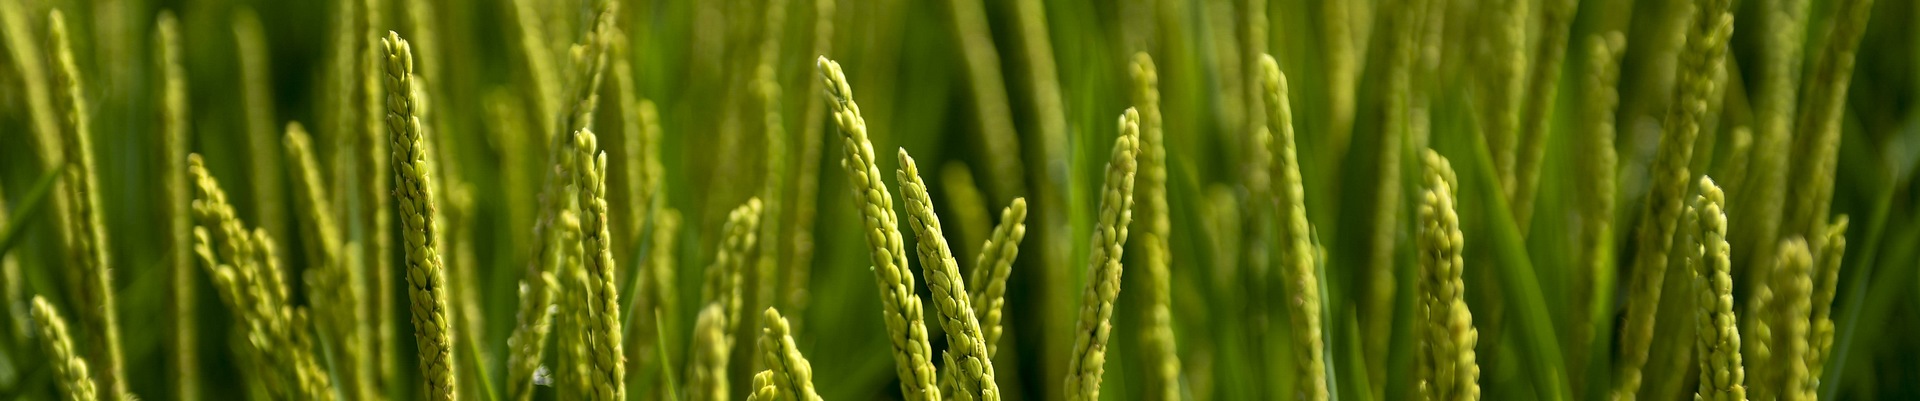 小麦水稻农业耕种粮食.jpg